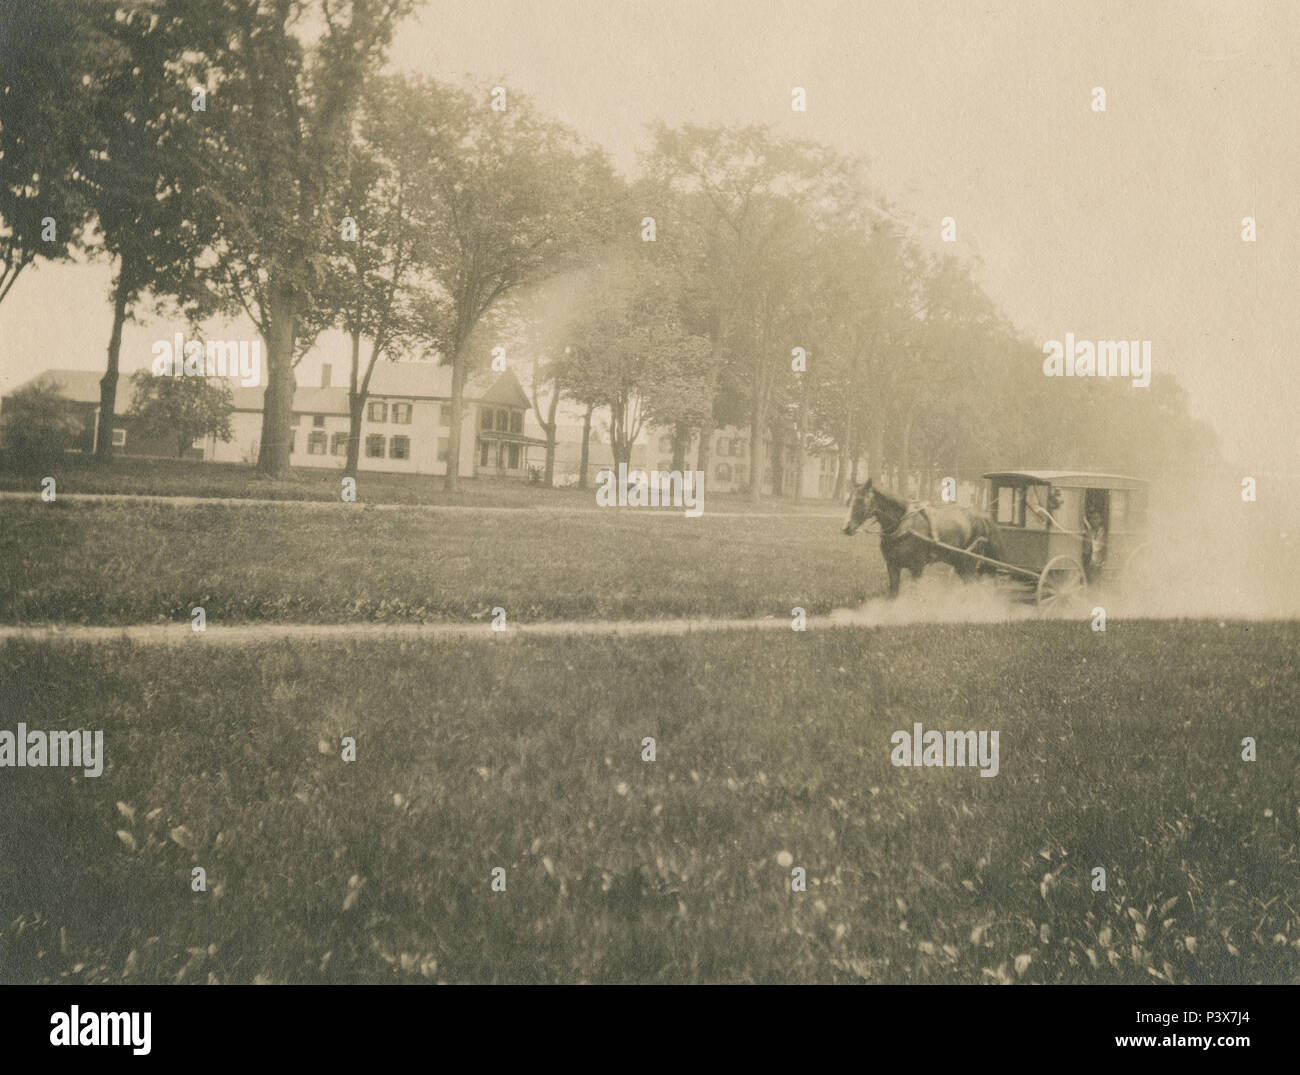 Antico risalente al 1910 fotografia, carrozza trainata da cavalli su un polveroso country road. Posizione sconosciuta, eventualmente la Nuova Inghilterra, Stati Uniti d'America. Fonte: fotografia originale Foto Stock